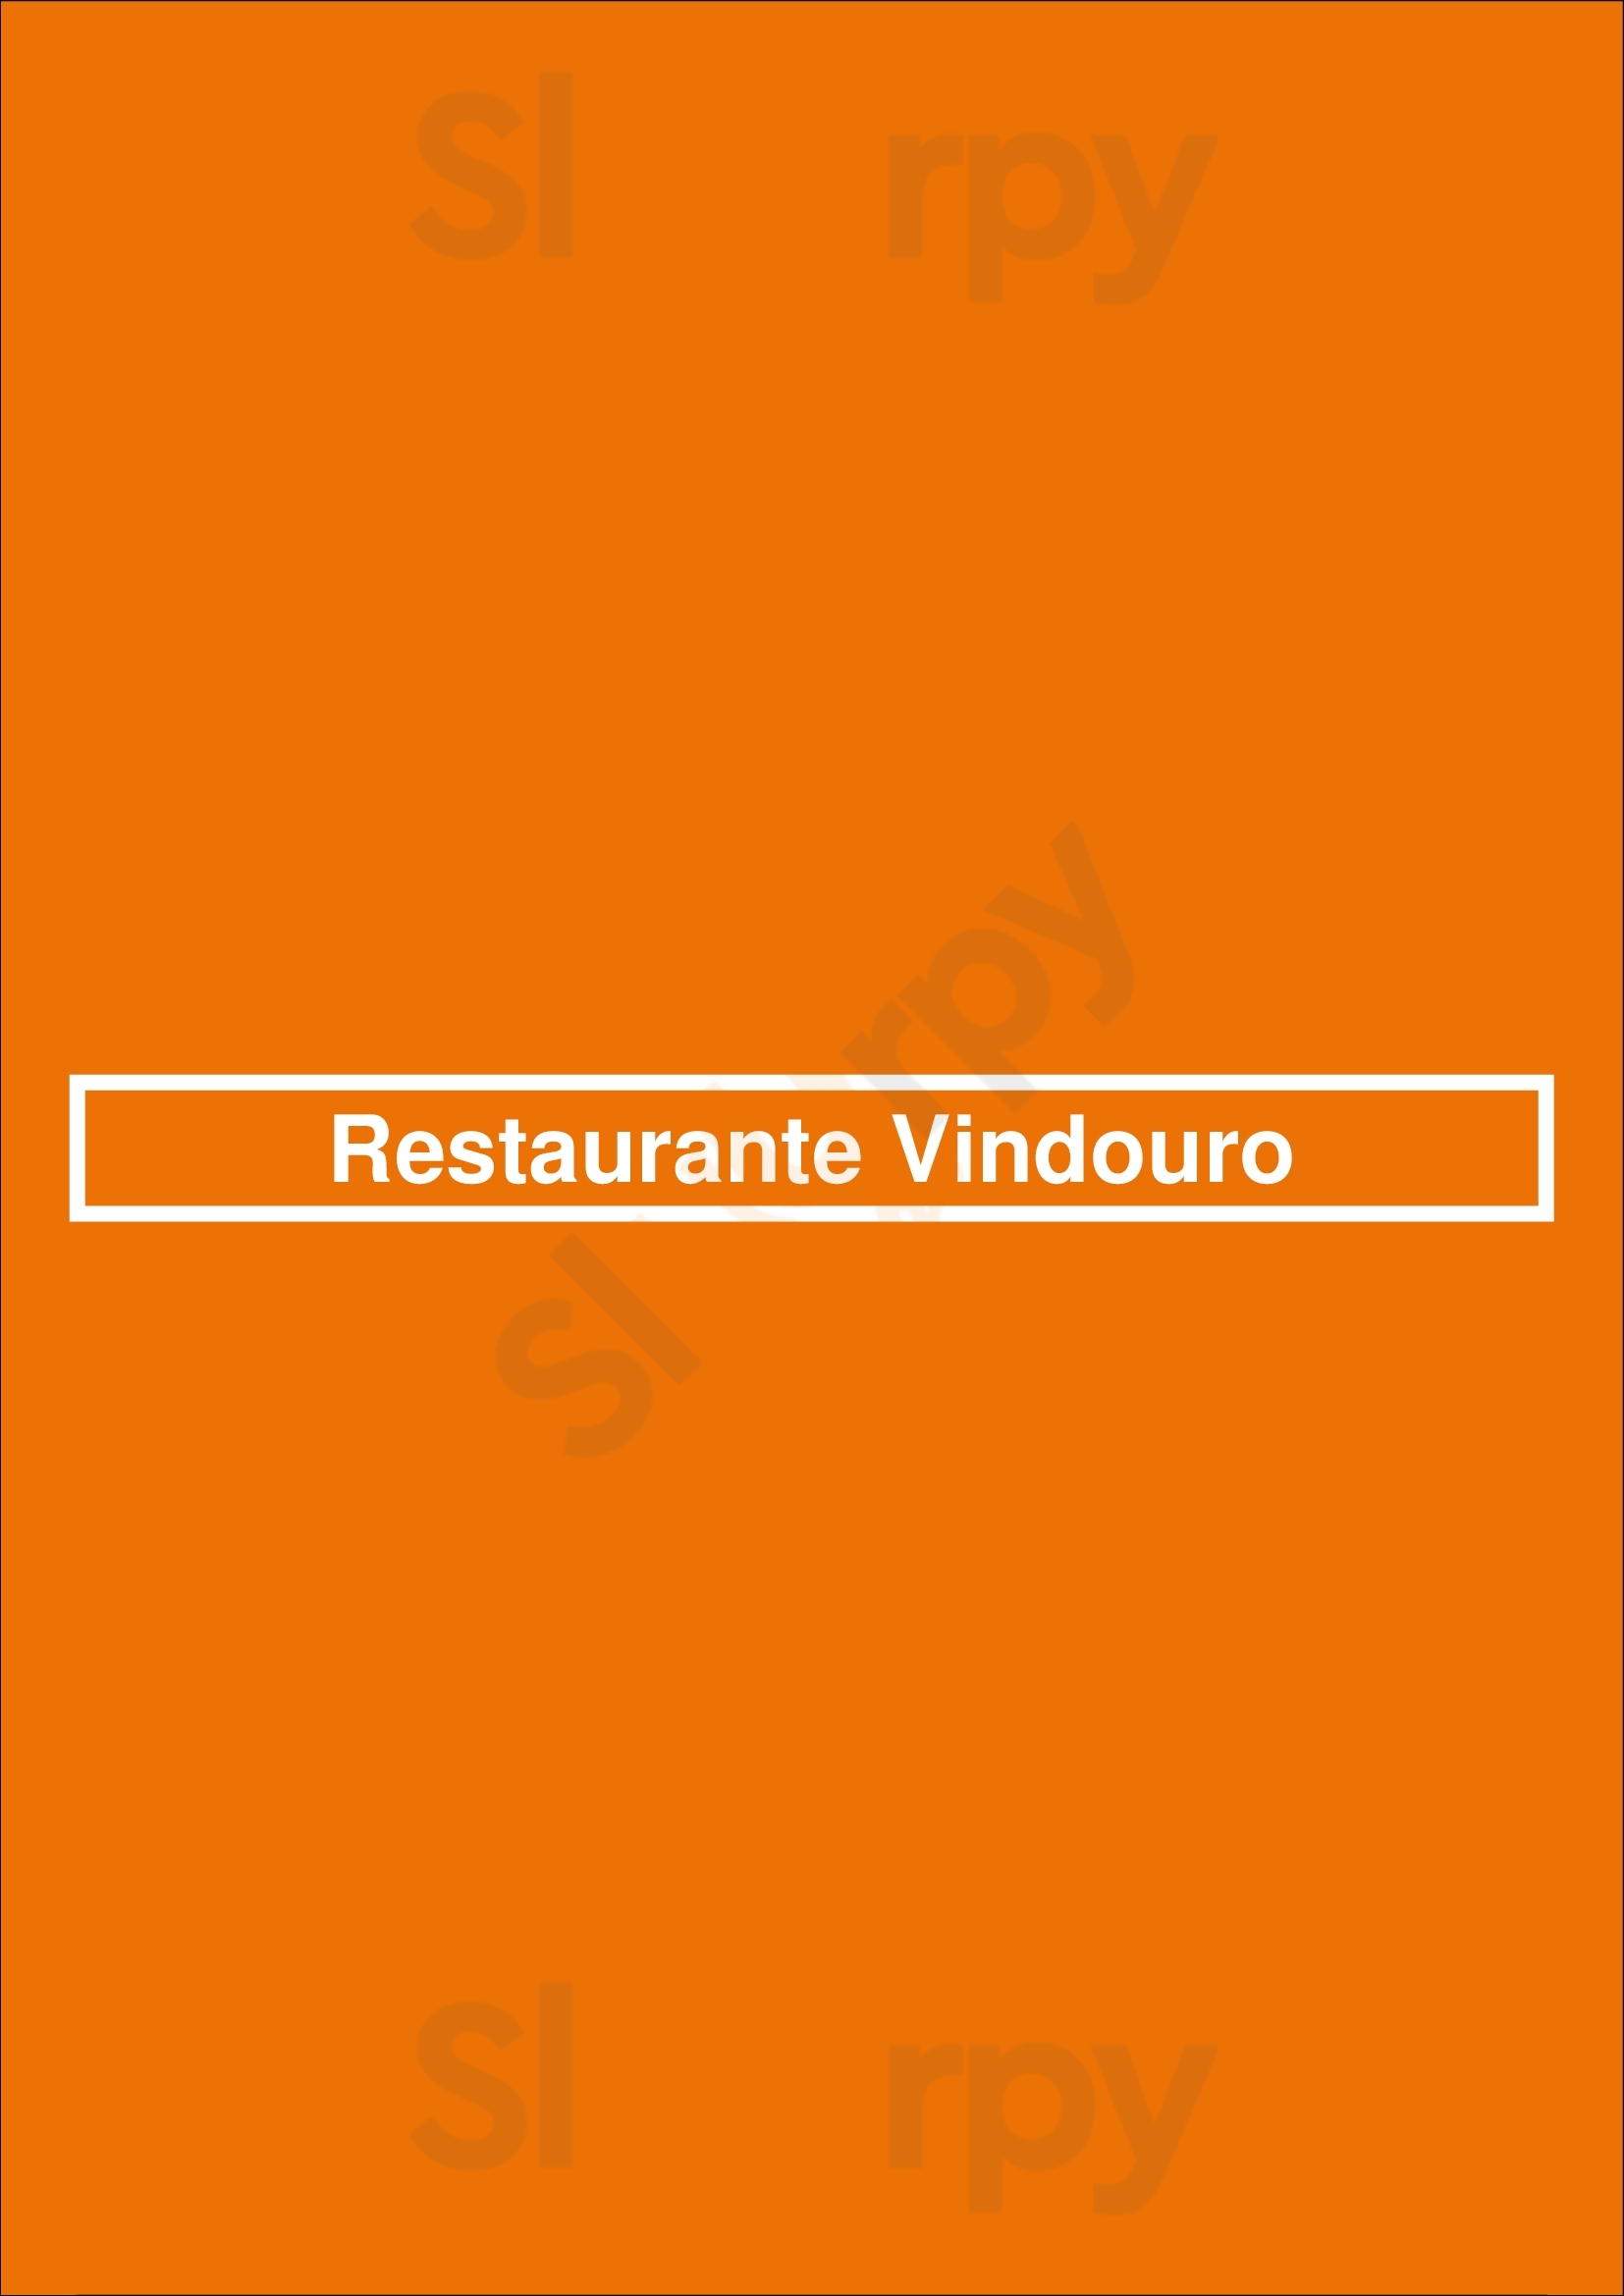 Restaurante Vindouro Lamego Menu - 1